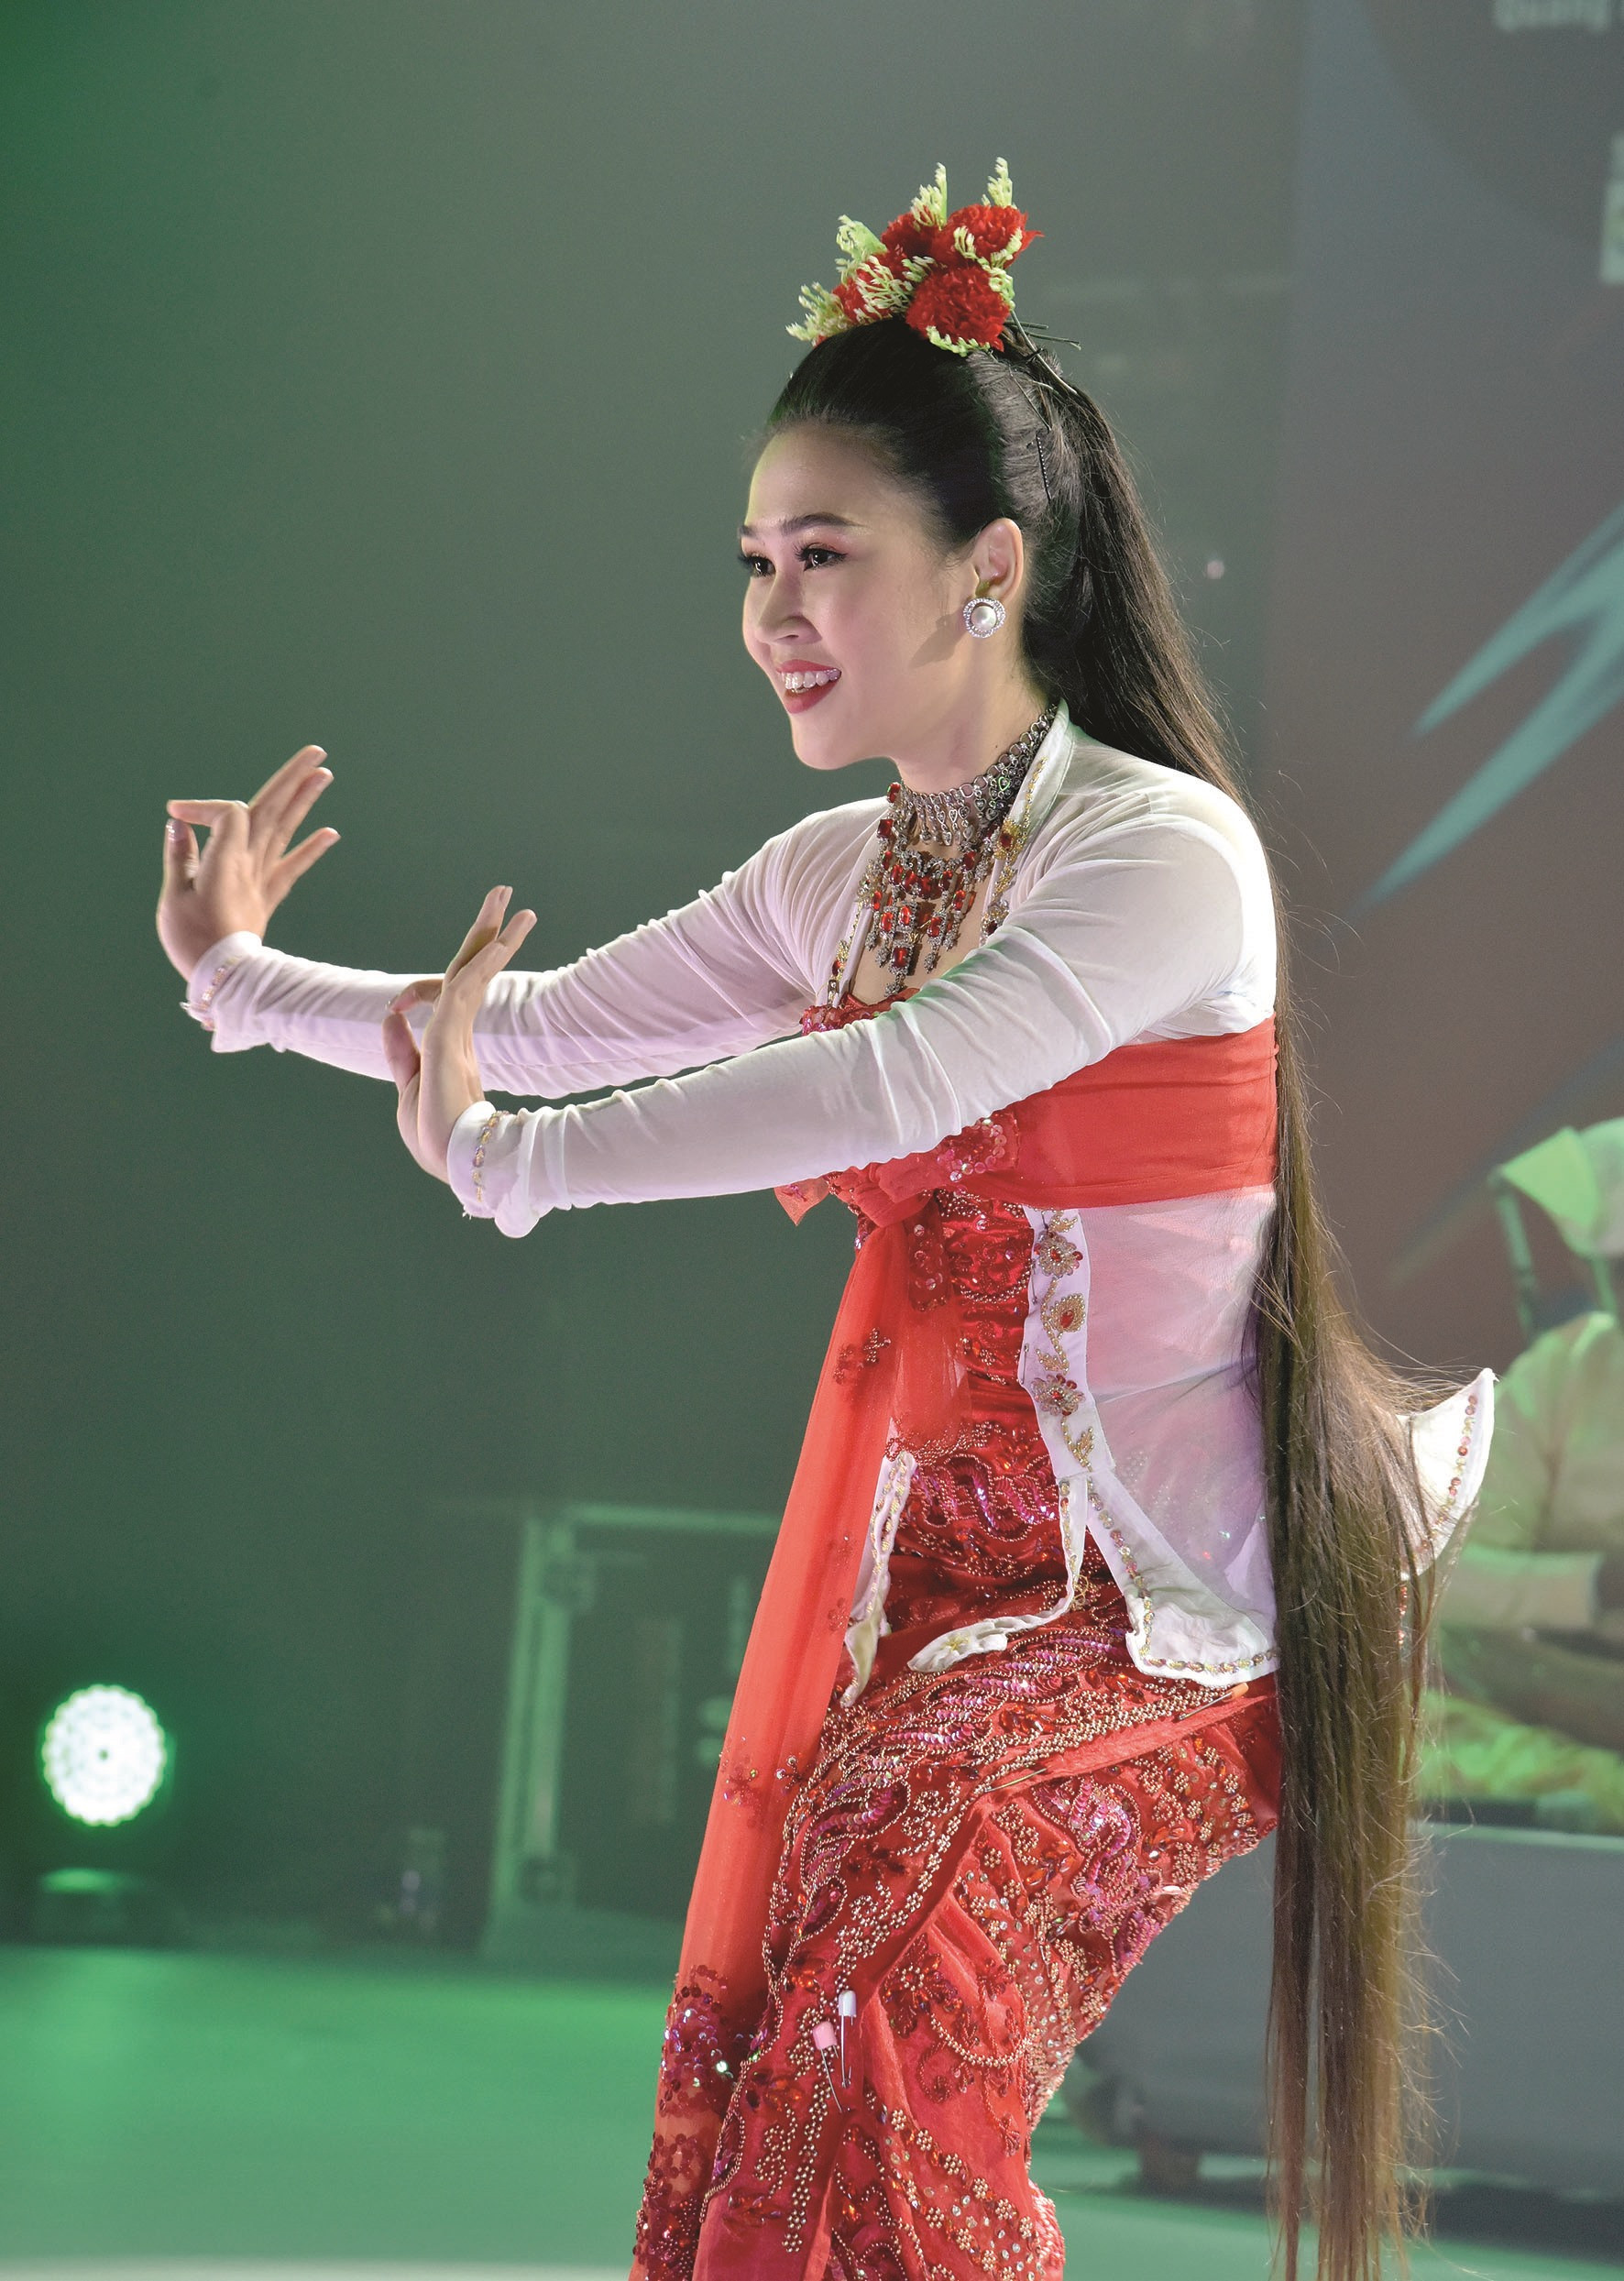 Điệu múa uyển chuyển của vũ nữ với chiếc áo và váy longgyi truyền thống của dân tộc Bhamar.